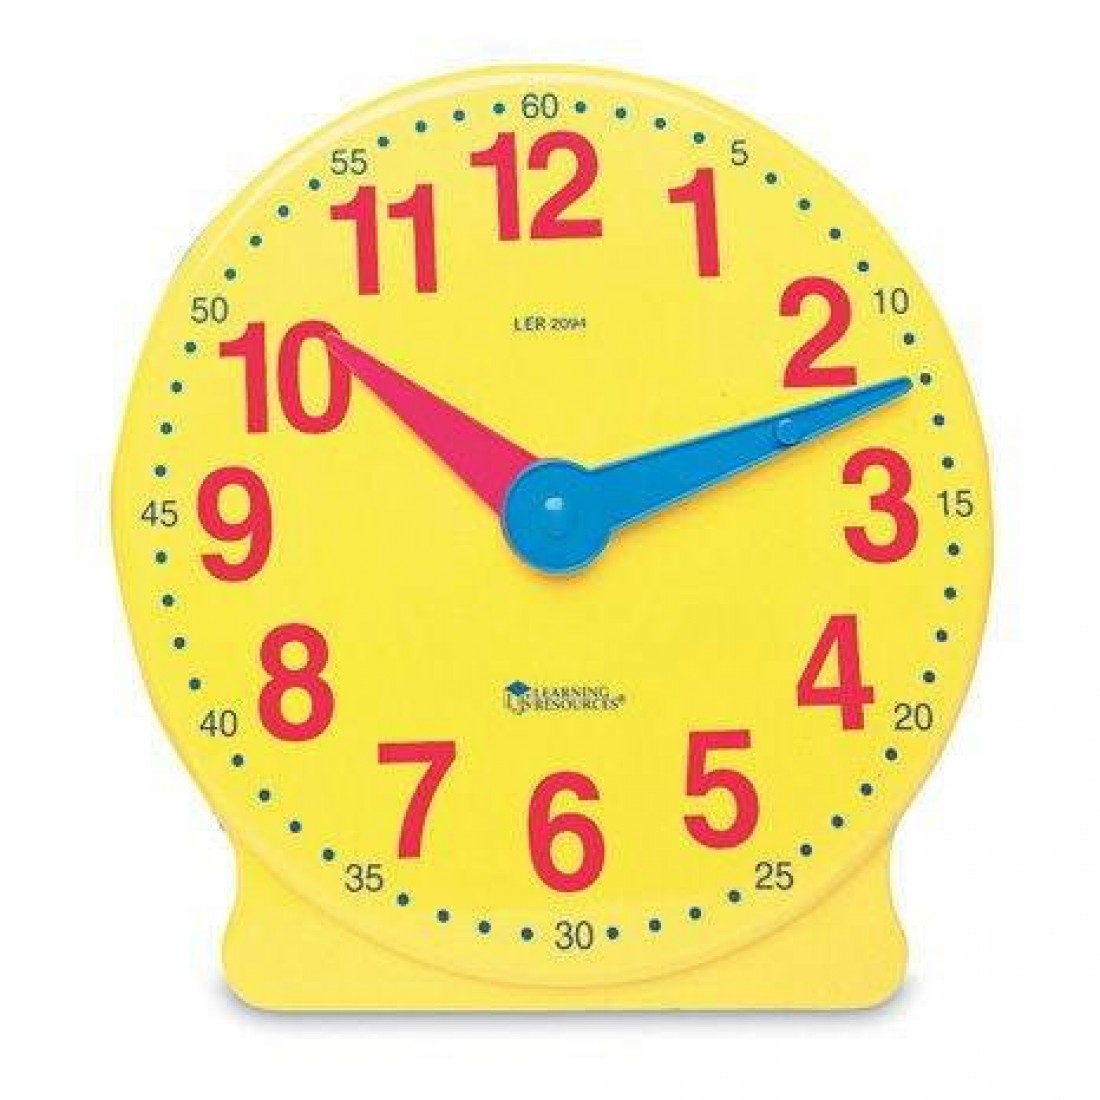 Циферблат часов для обучения. Модель часов. Часы обучающие для детей. Модель часов демонстрационная. Модель циферблата часов для детей.